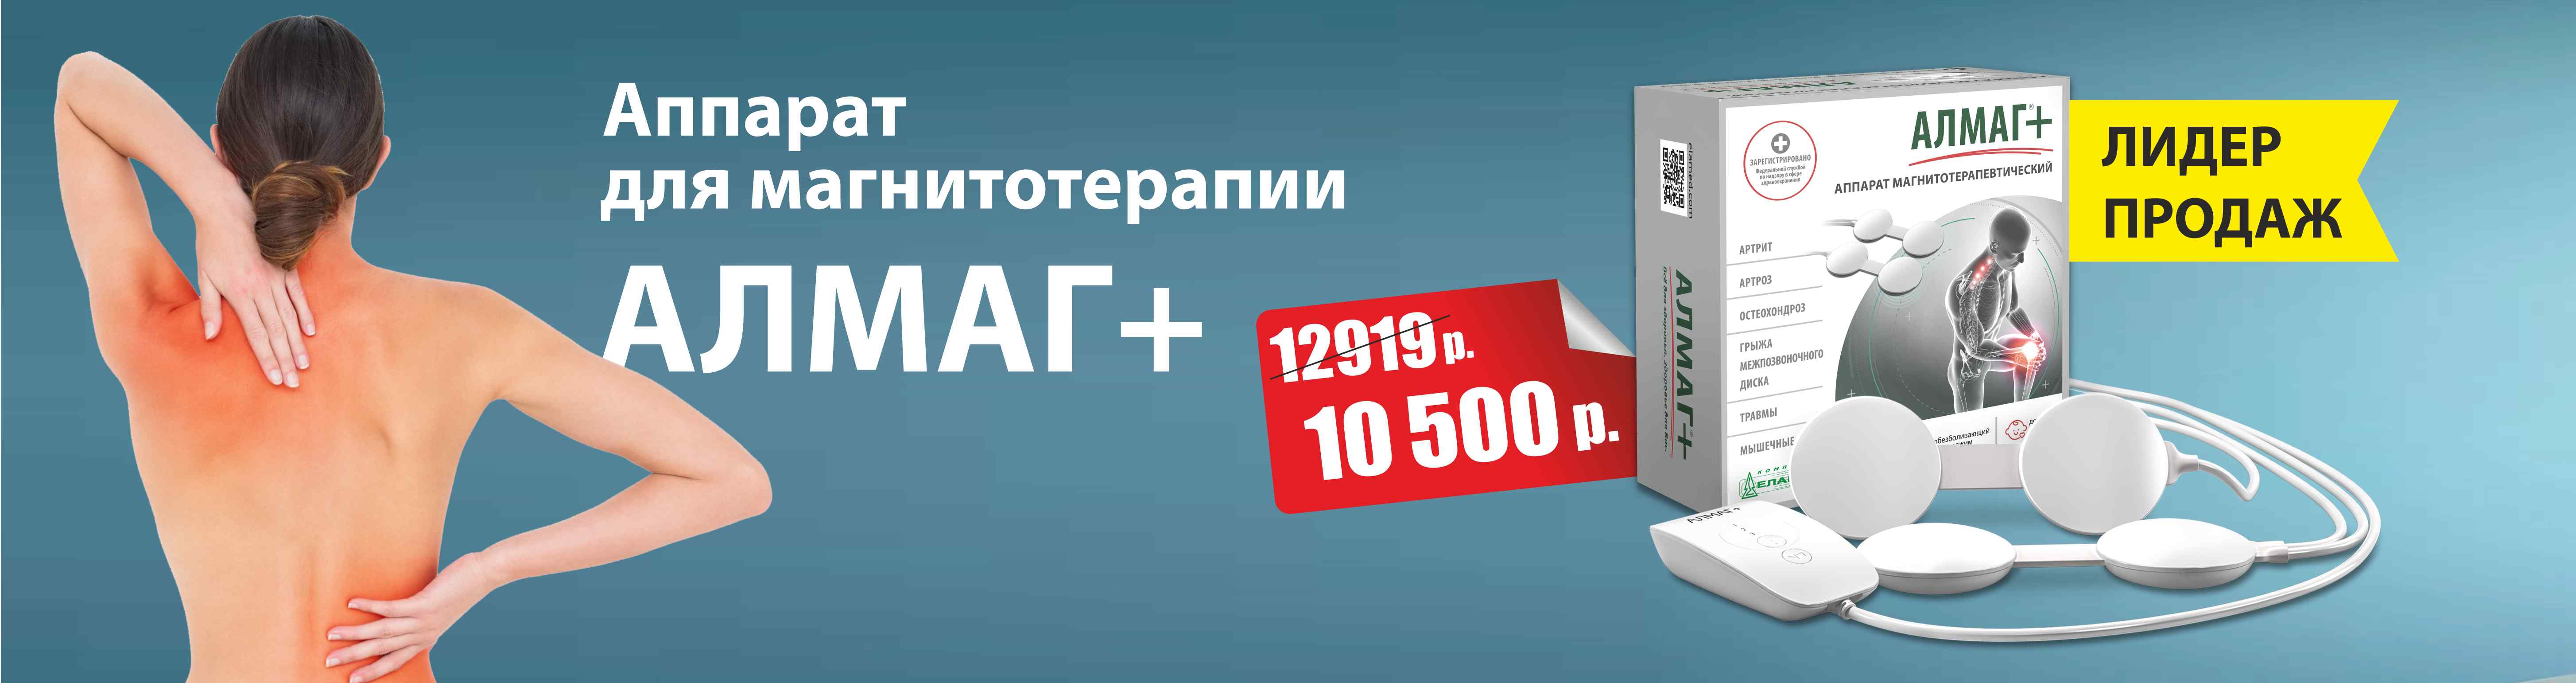 Аппарат Алмаг + всего за 10 500 руб.